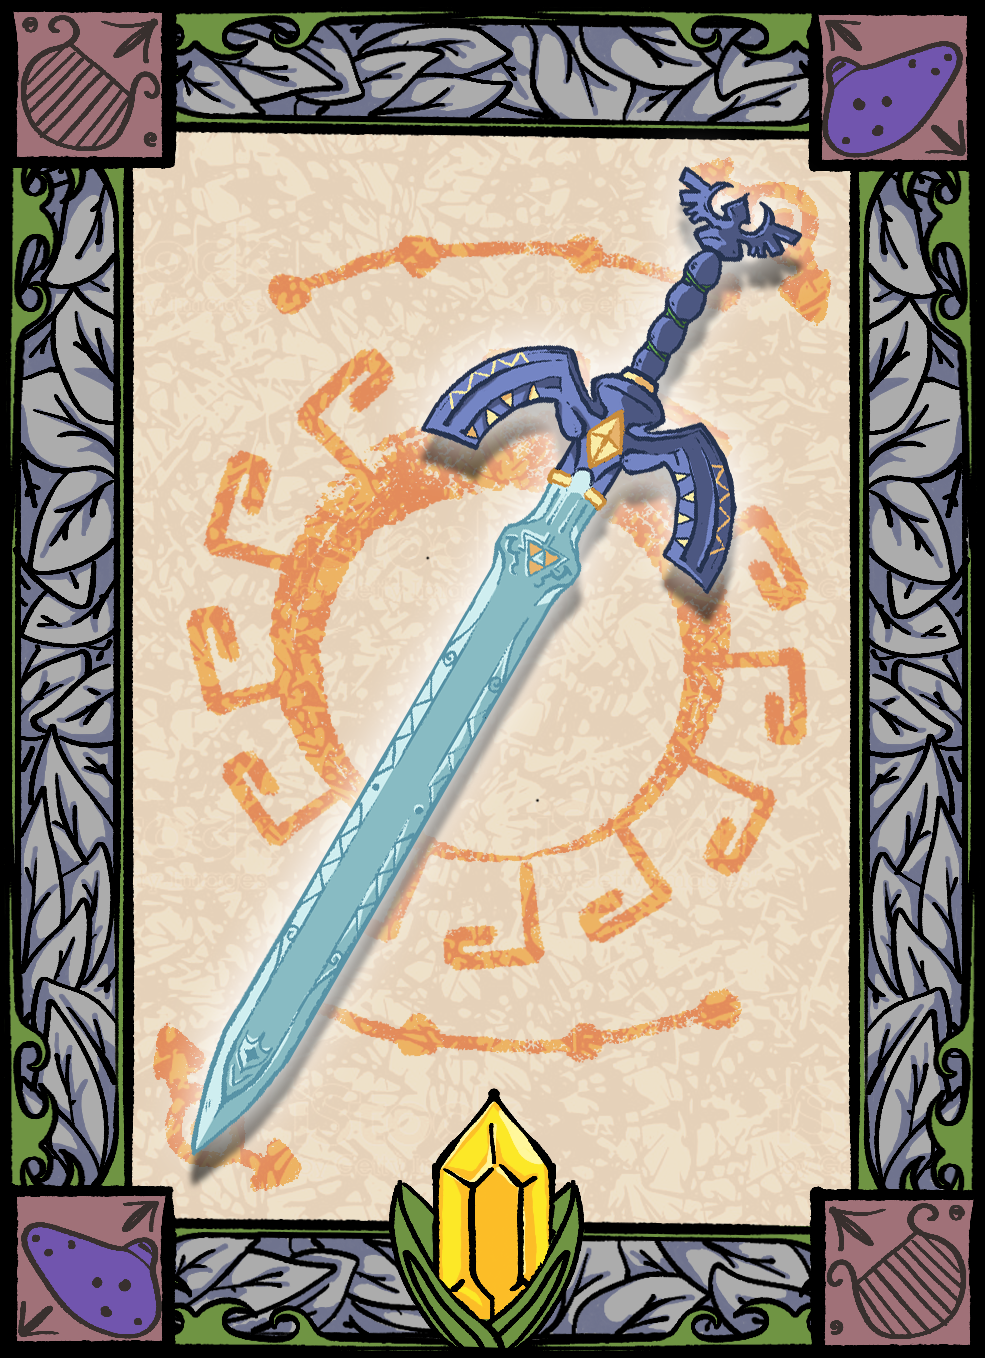 Nft Master Sword - 15020003